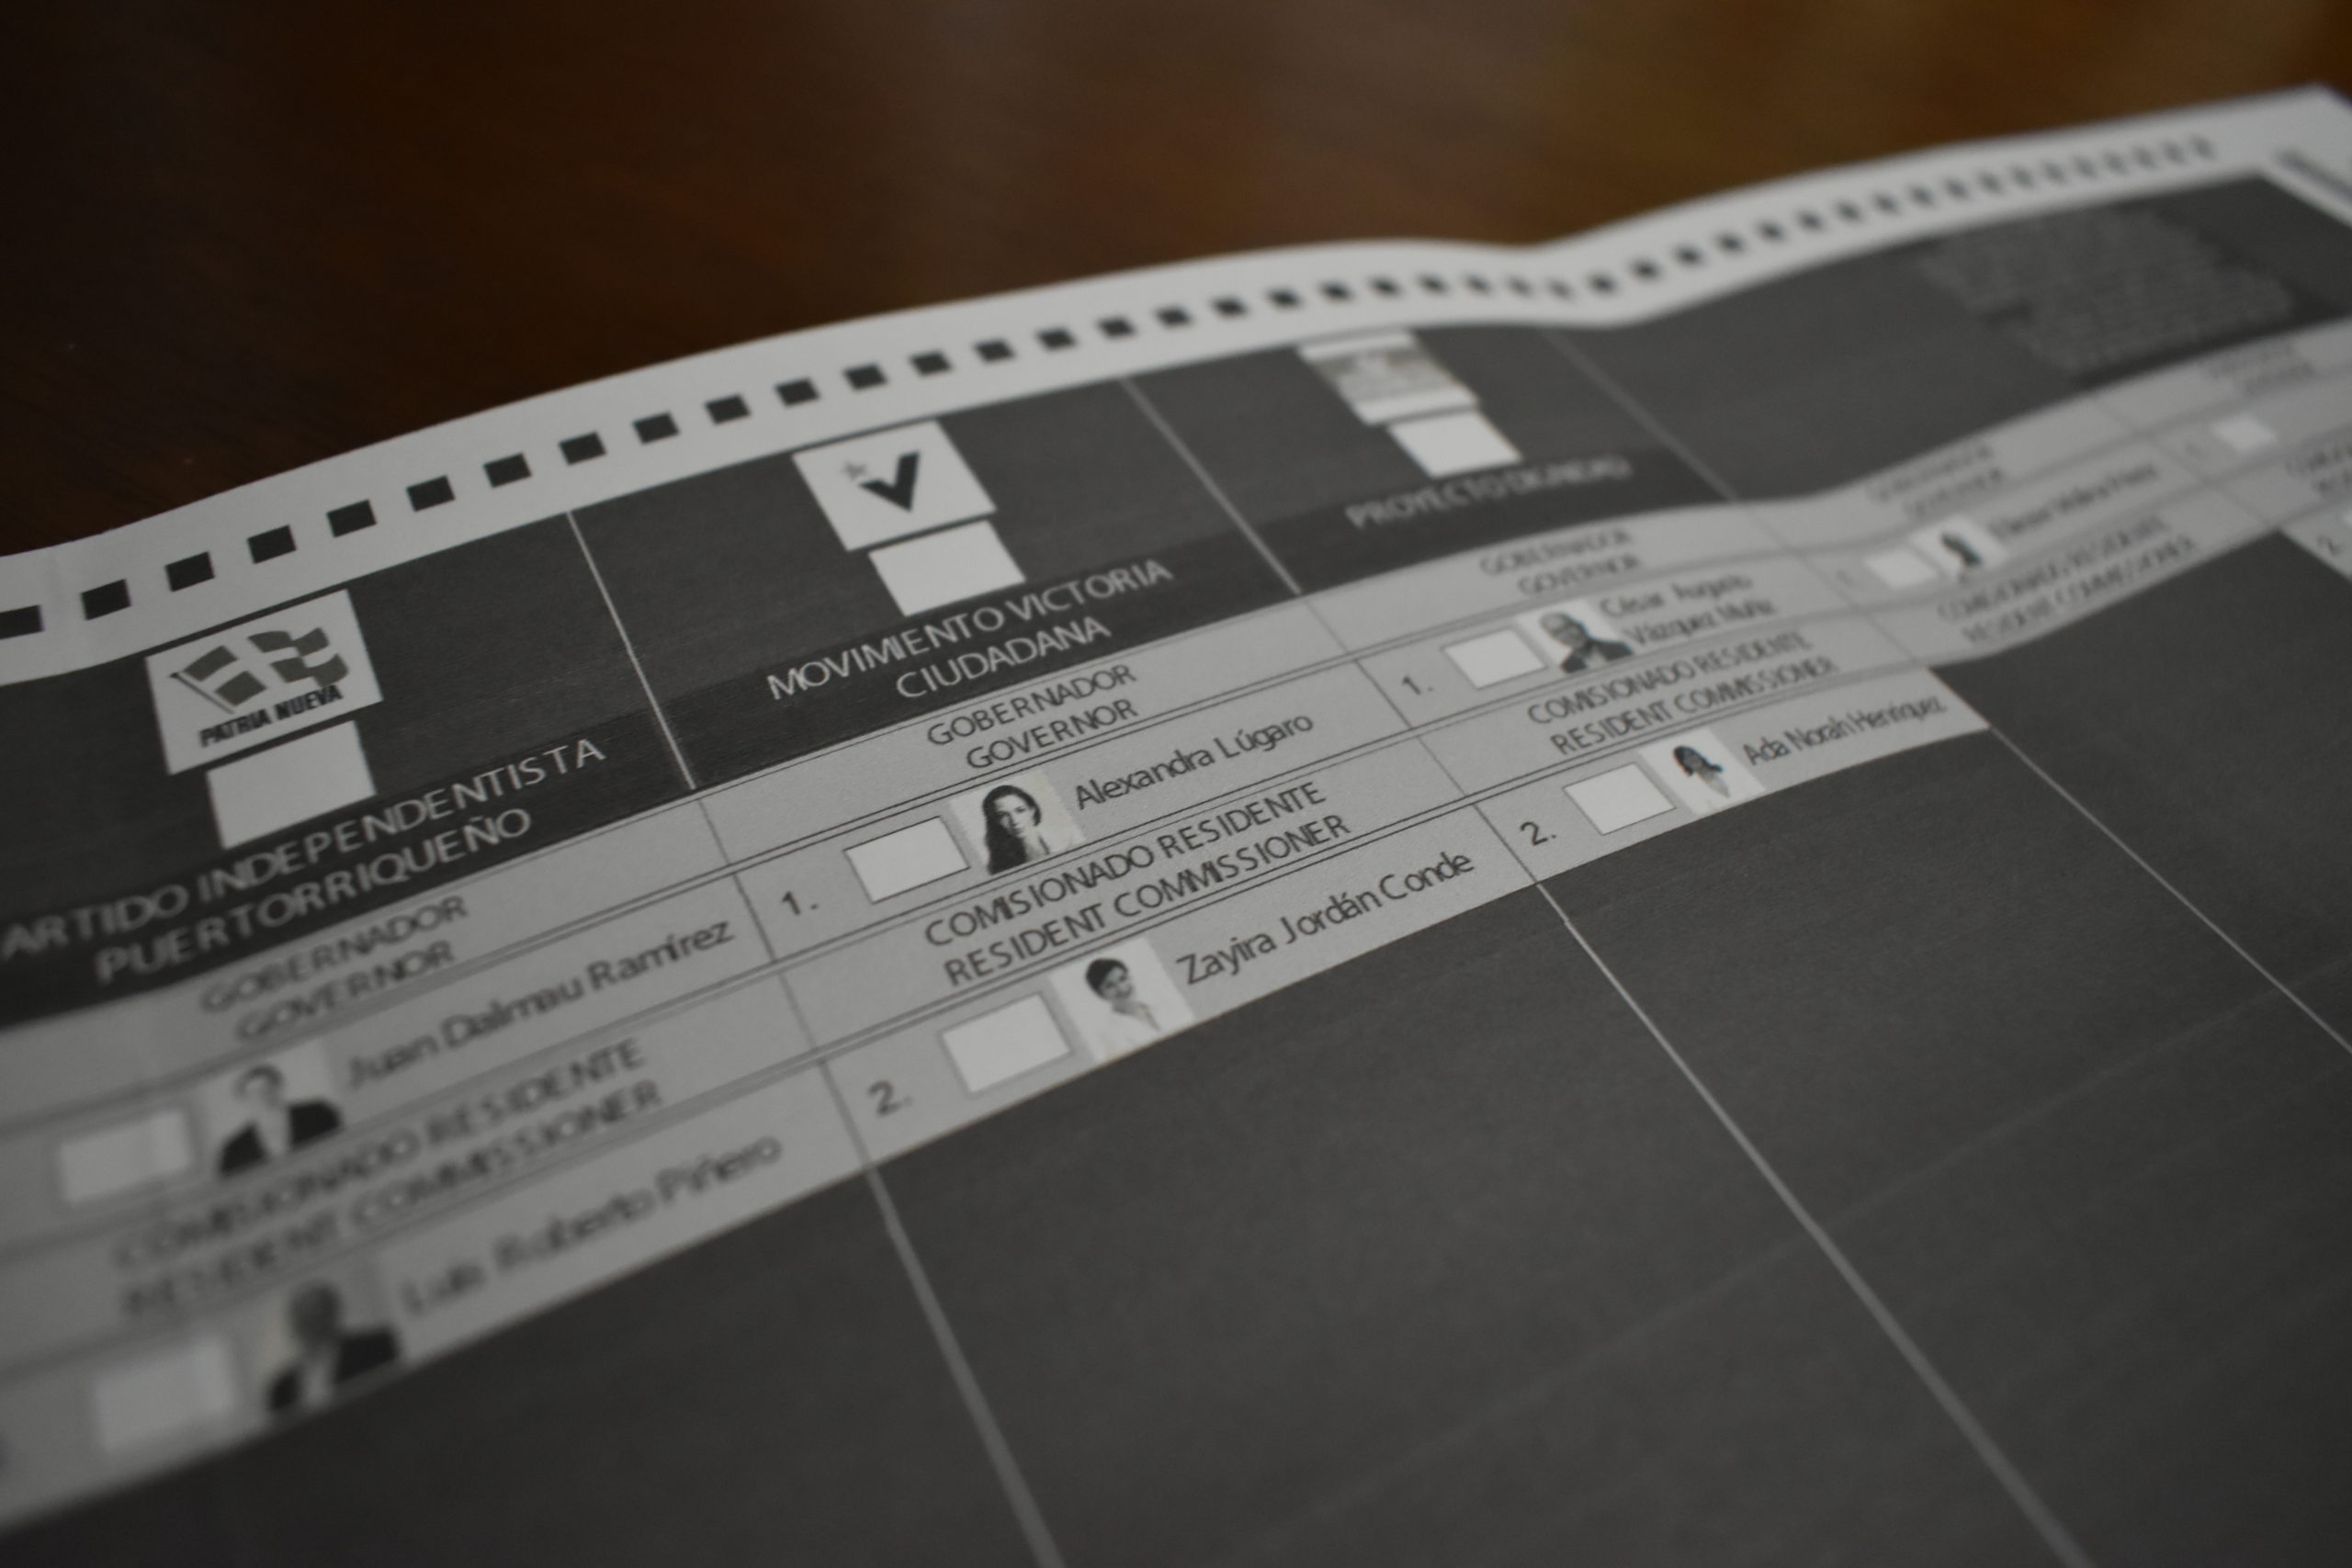 MVC solicitará investigación sobre papeletas sospechosas de voto adelantado